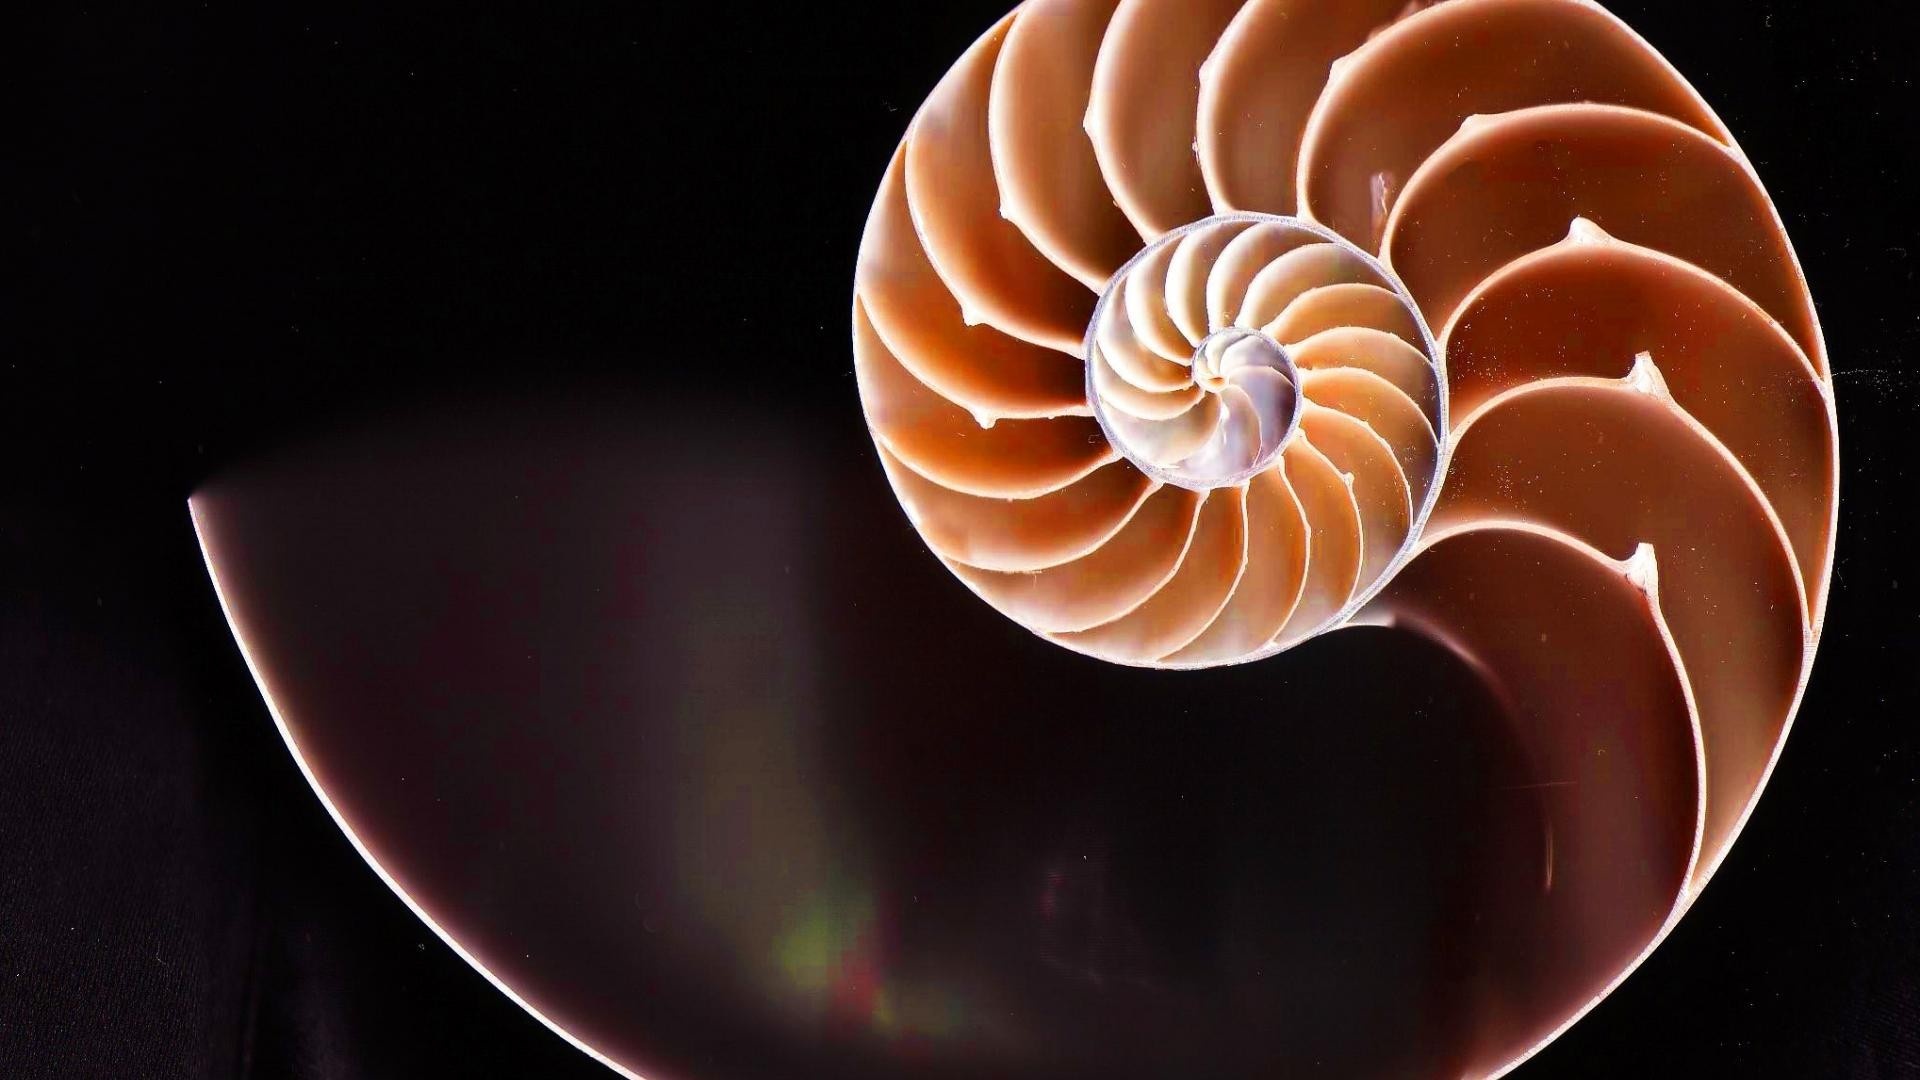 Golden Ratio: Nautilus shell, Fibonacci spiral, Natural symmetry, Divine proportions. 1920x1080 Full HD Wallpaper.